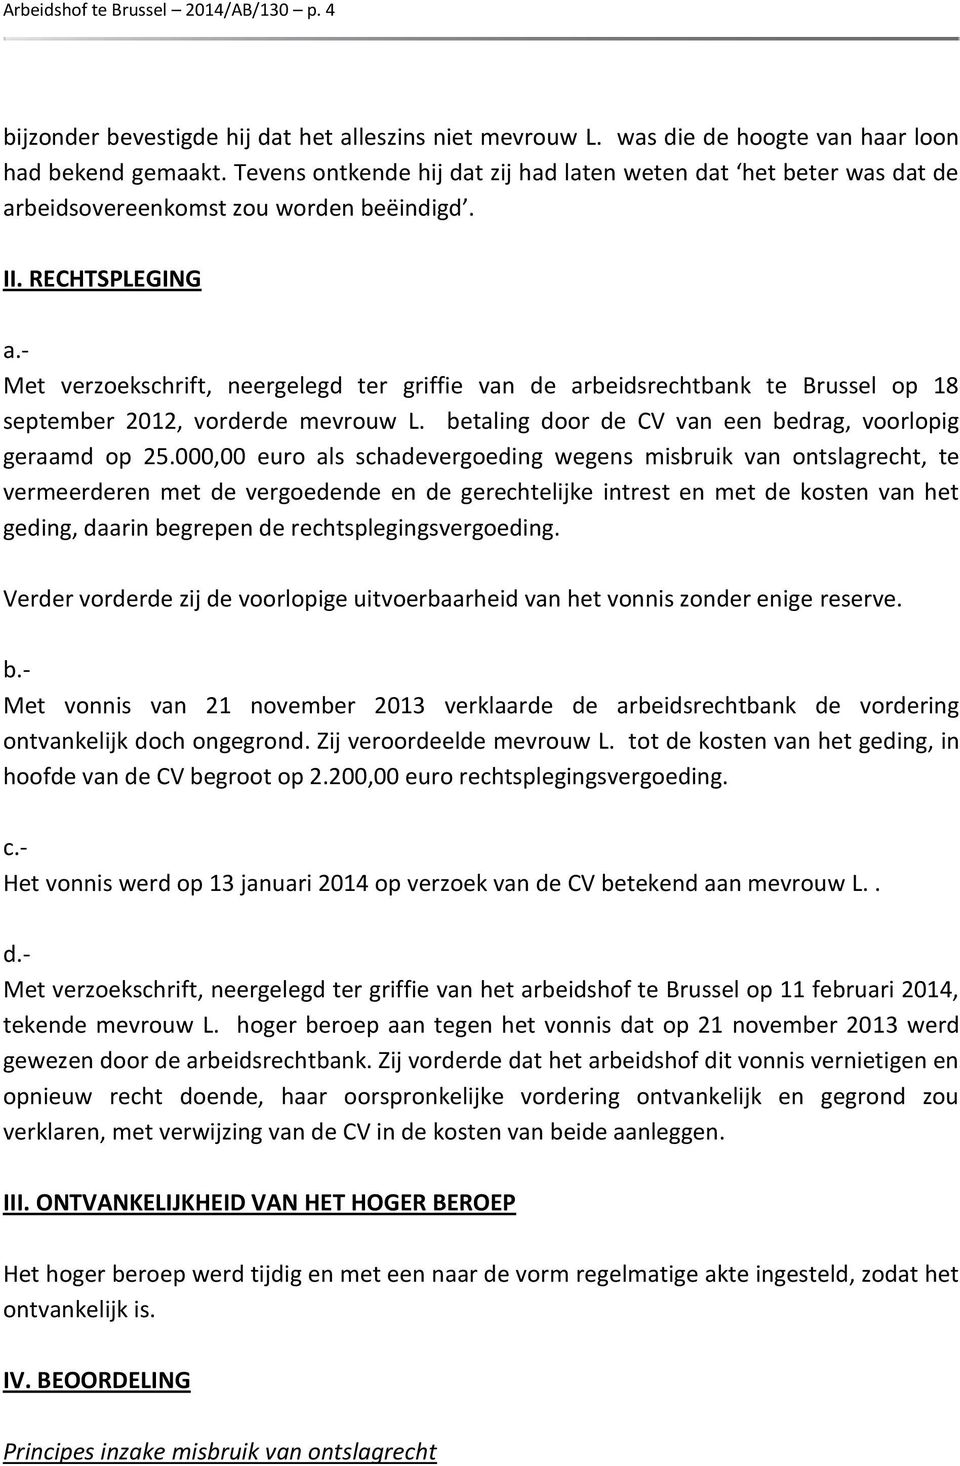 - Met verzoekschrift, neergelegd ter griffie van de arbeidsrechtbank te Brussel op 18 september 2012, vorderde mevrouw L. betaling door de CV van een bedrag, voorlopig geraamd op 25.